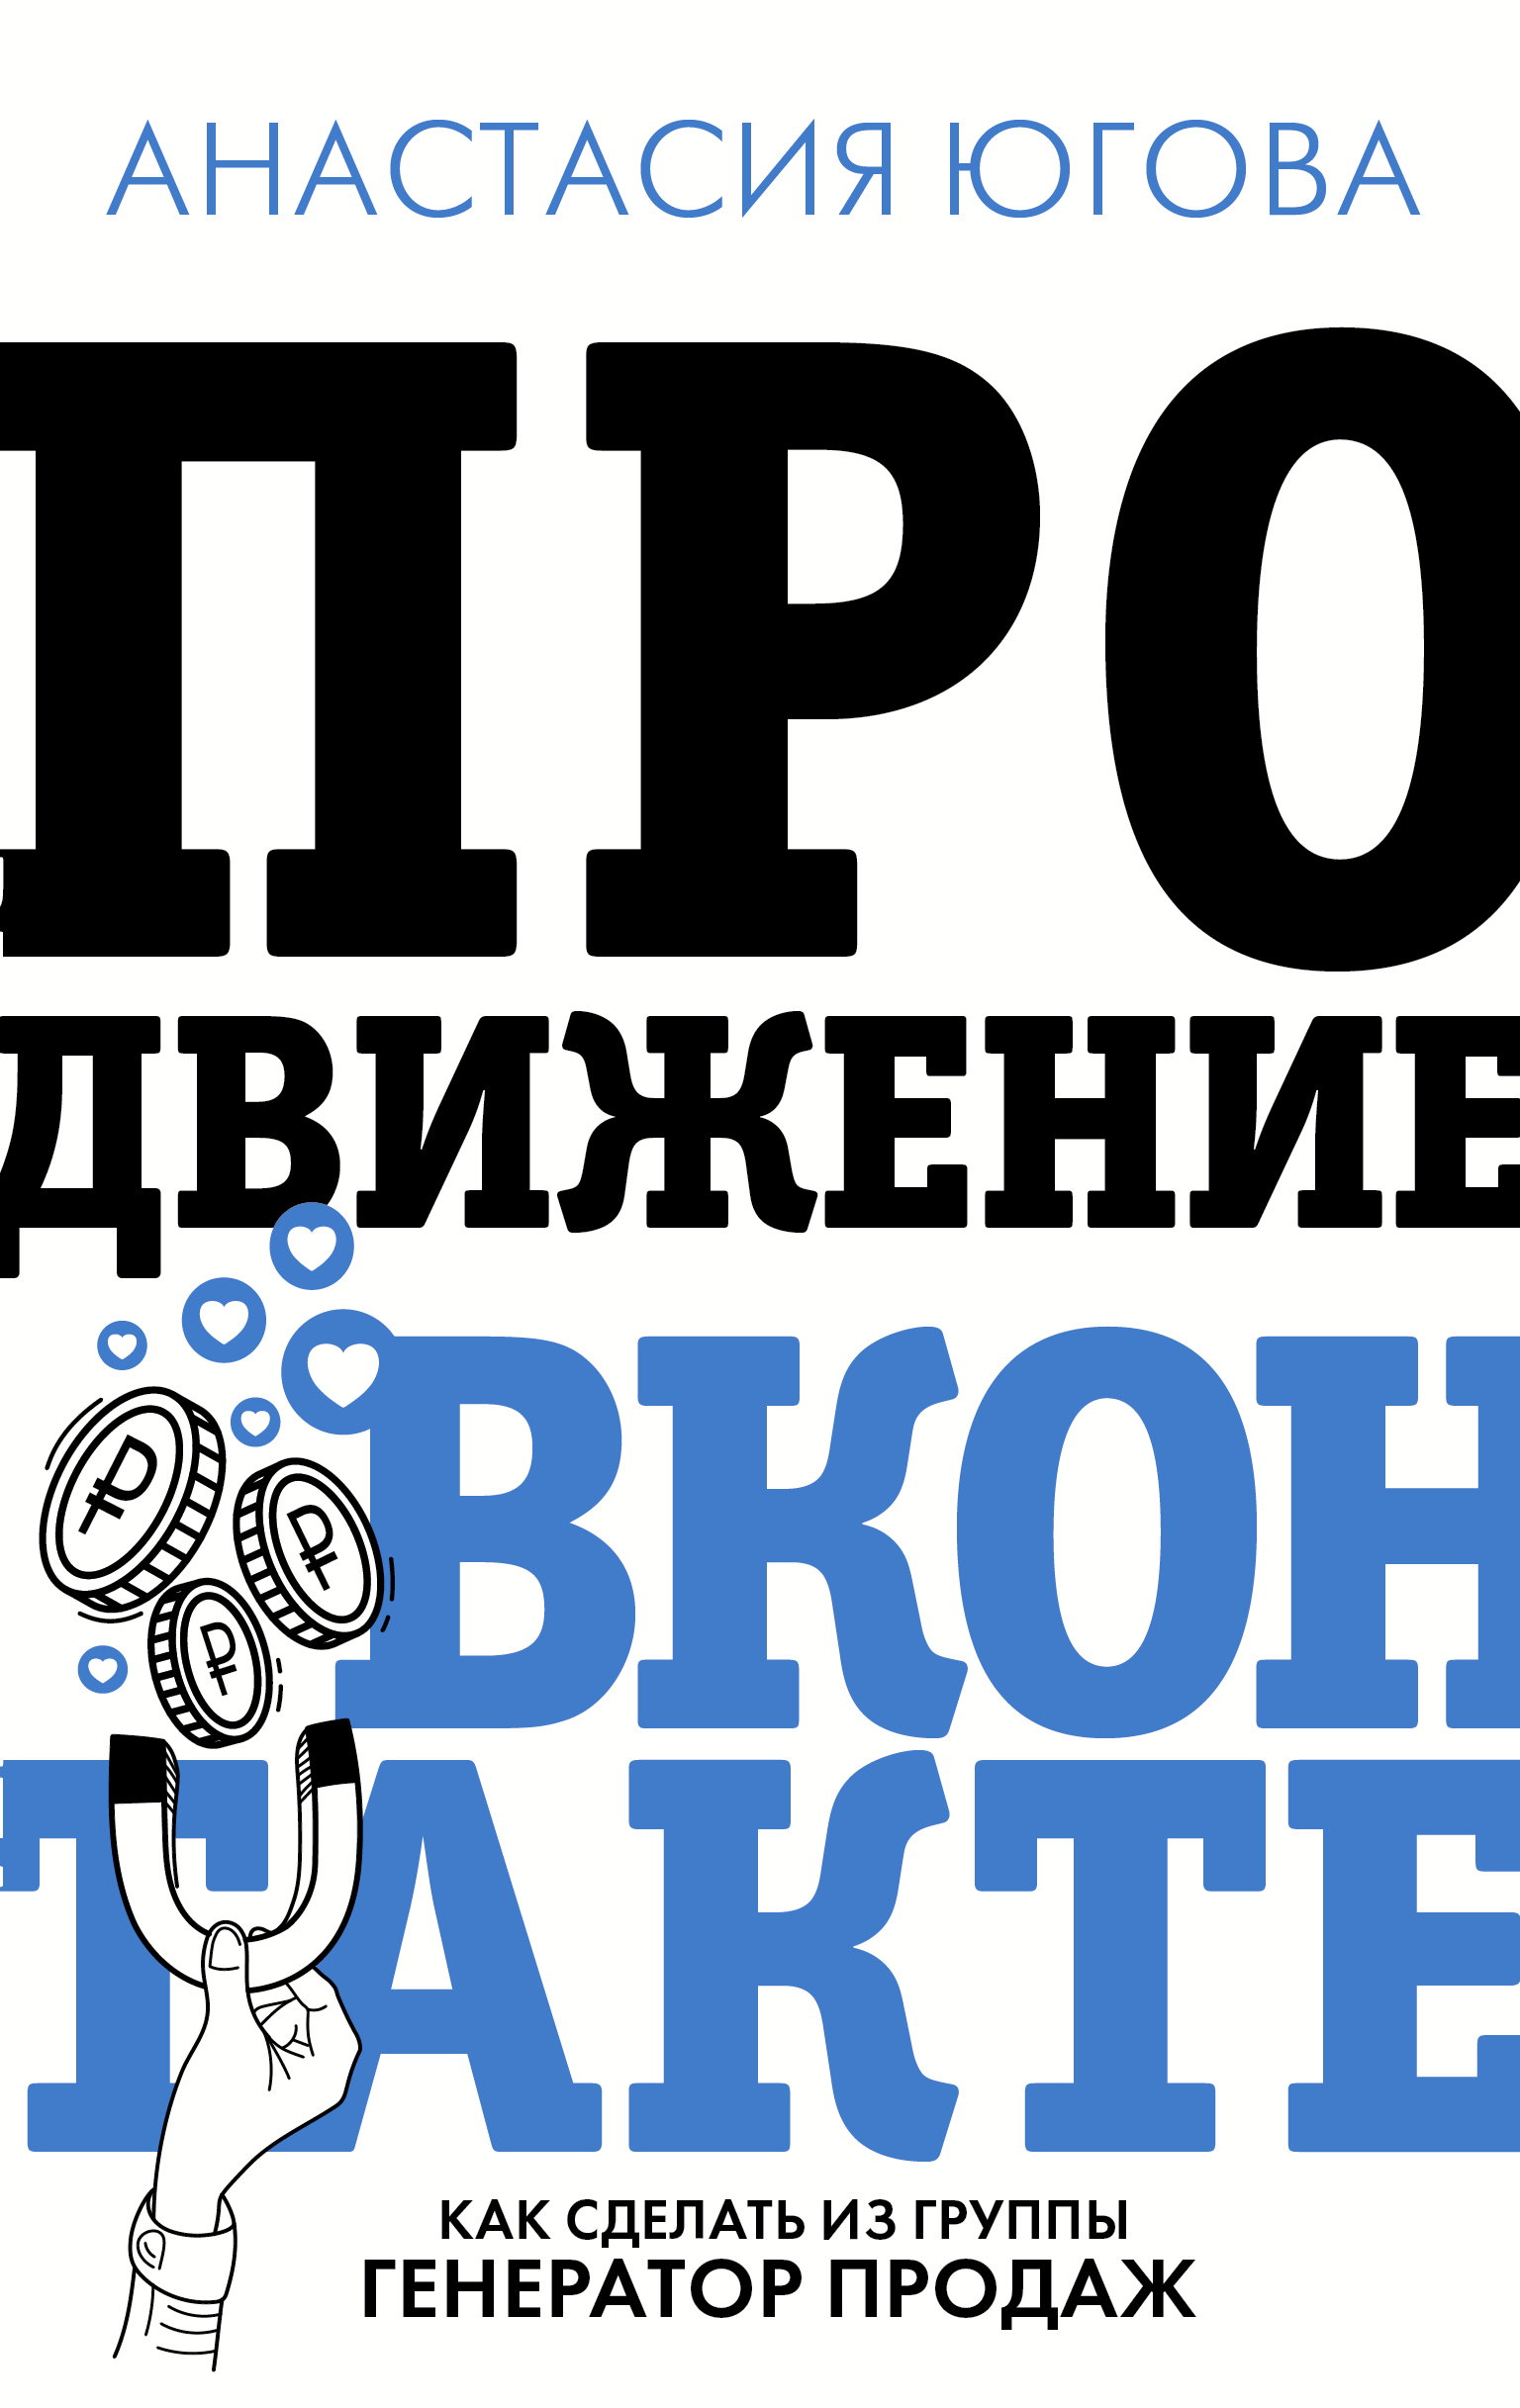 Продвижение ВКонтакте: как сделать из группы генератор продаж